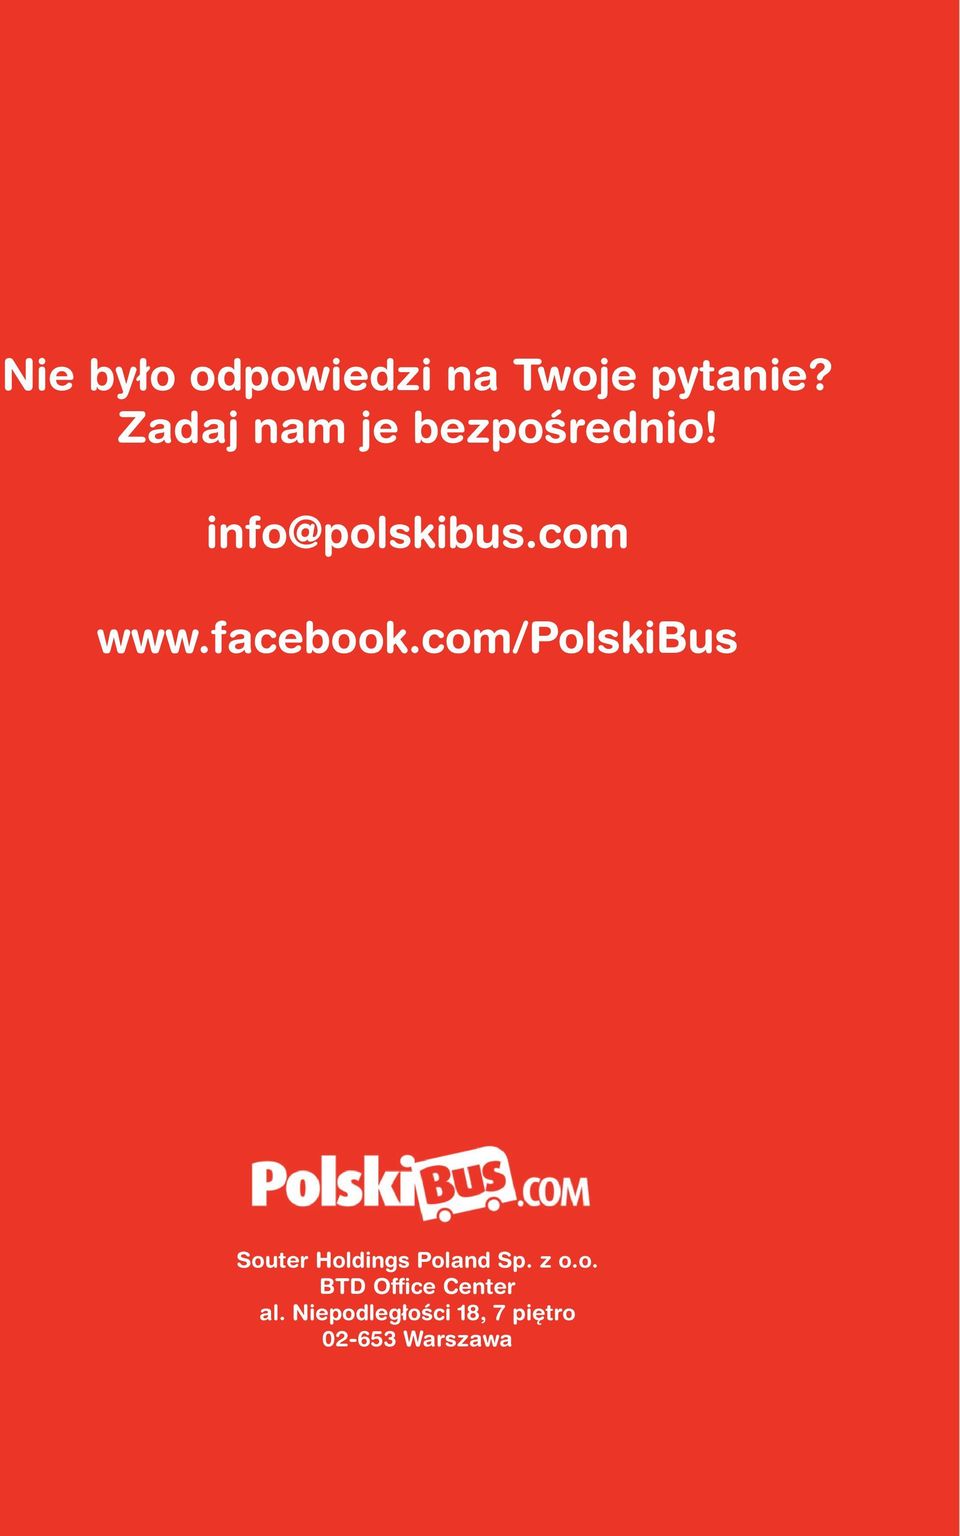 facebook.com/polskibus Souter Holdings Poland Sp.